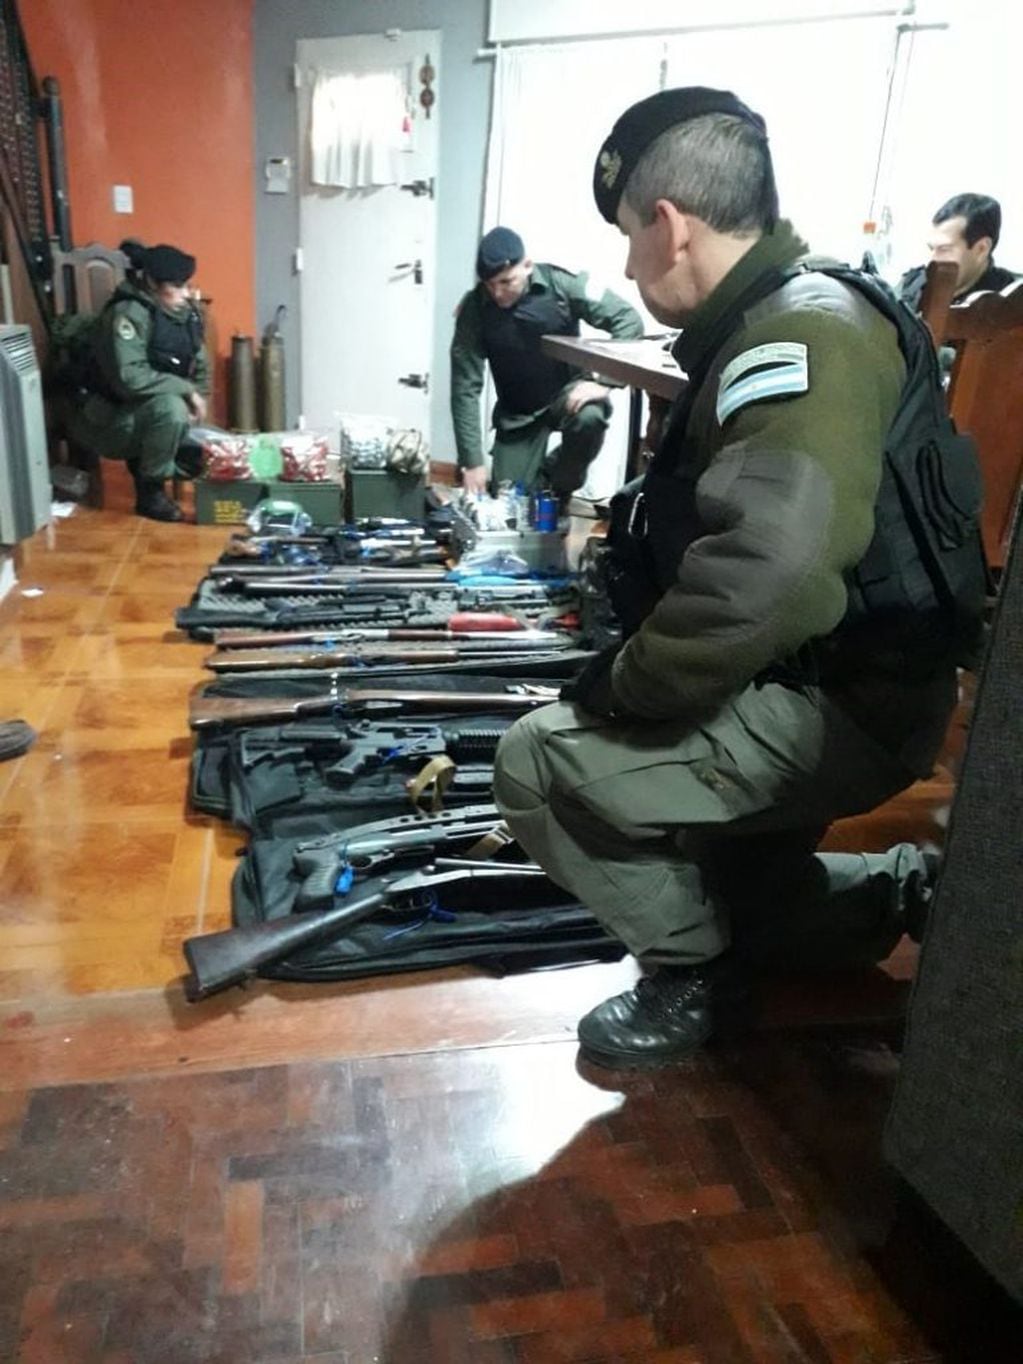 Presentaron en Córdoba el mayor decomiso de armas en la historia de Argentina, de acuerdo con los dichos de la ministra Bullrich.